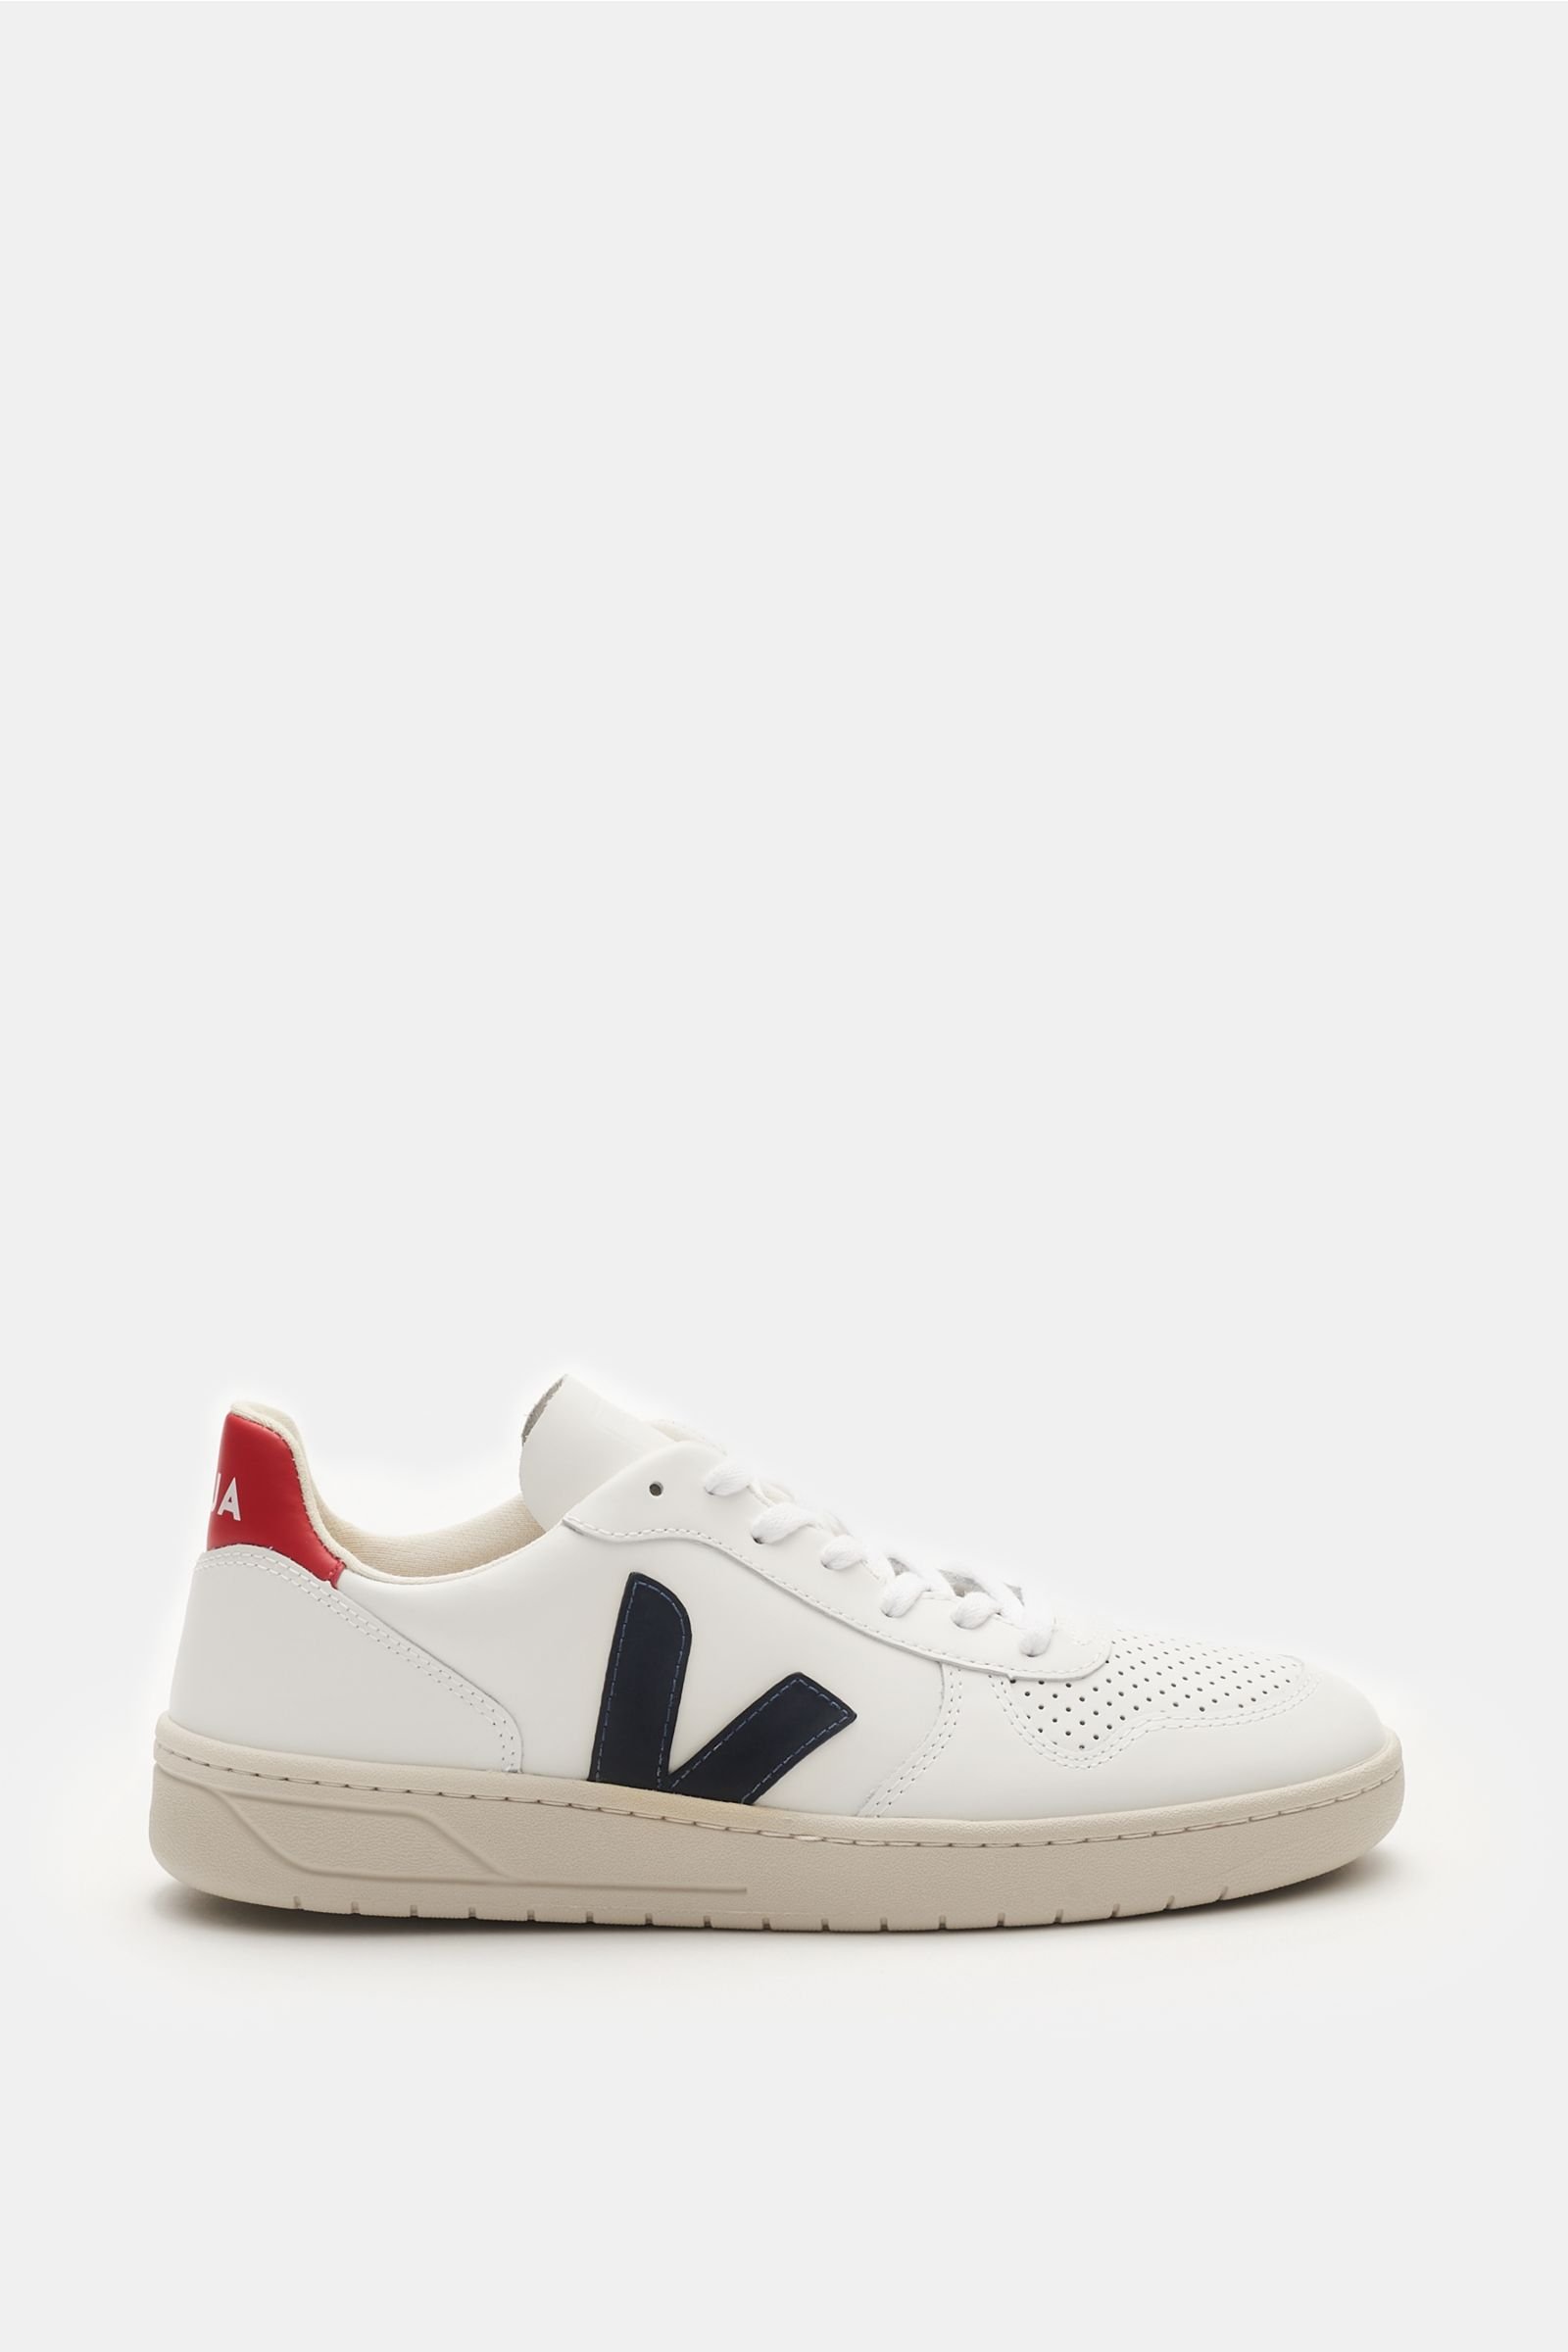 VEJA sneakers 'V-10' white/red | BRAUN 